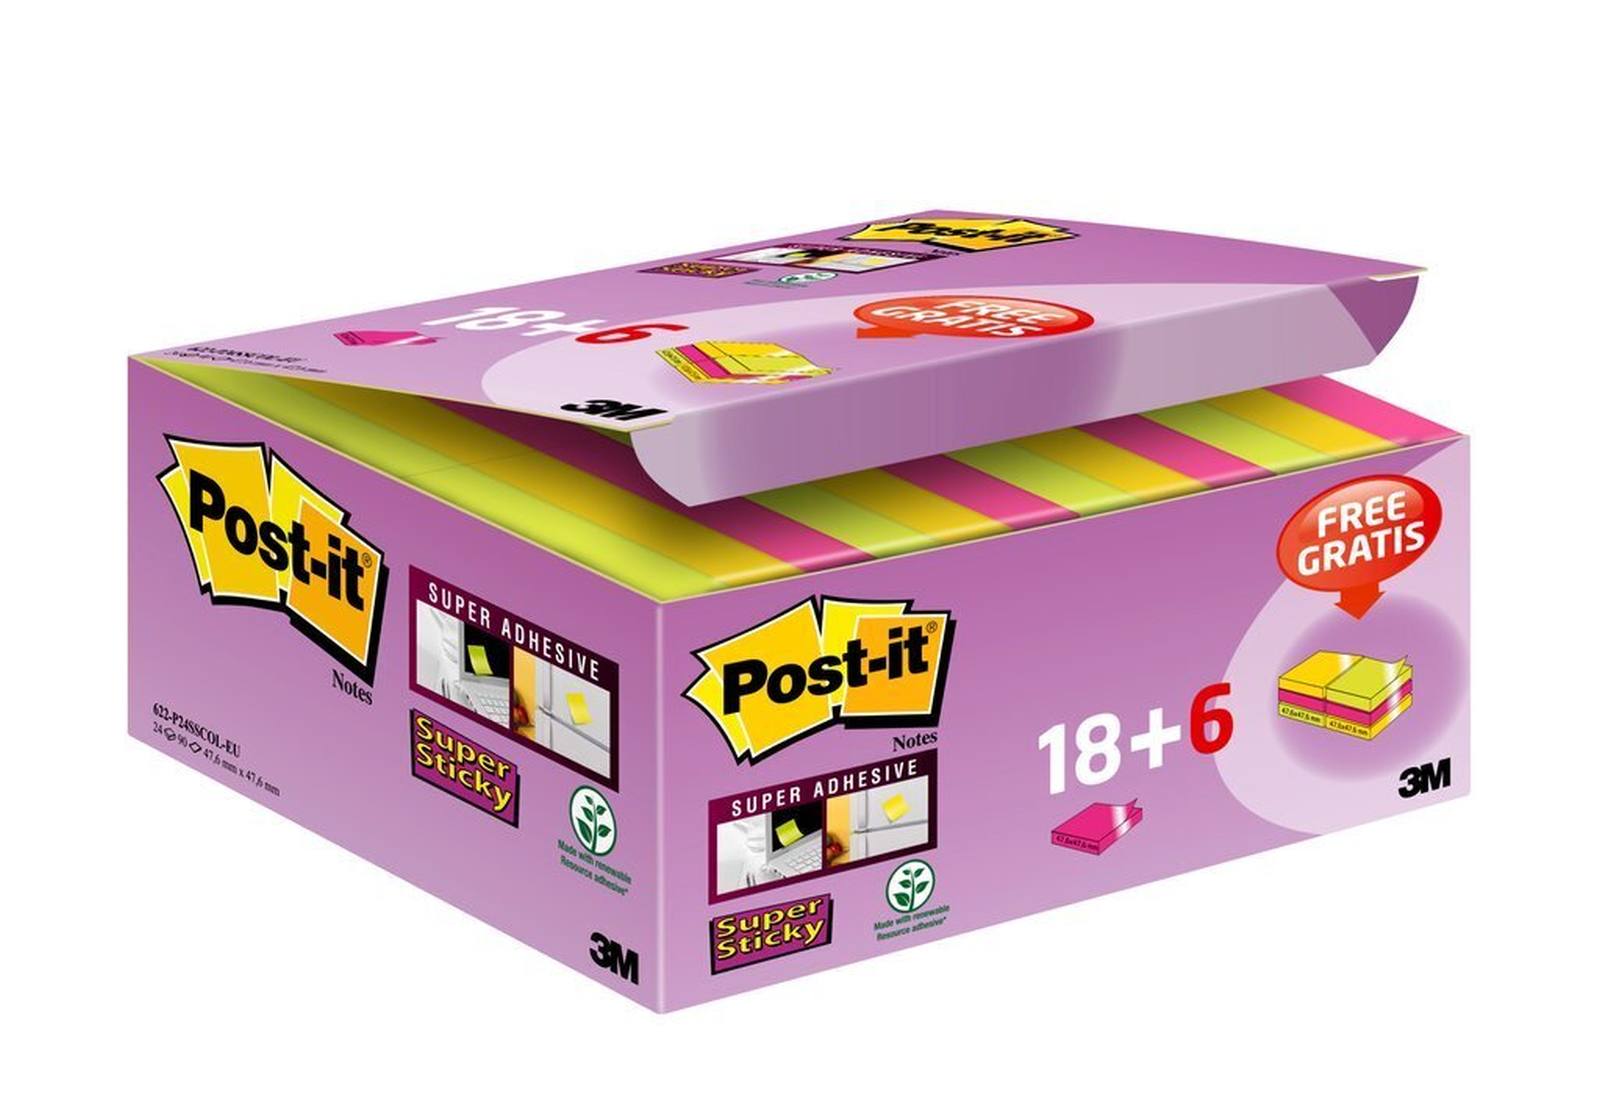 3M Post-it Super Sticky Notes Promotion 622P24SC, 24 blocs de 90 hojas en una caja a un precio especial, ultra rosa, amarillo, verde neón, 48 mm x 48 mm, sin celofanizar individualmente, certificado PEFC